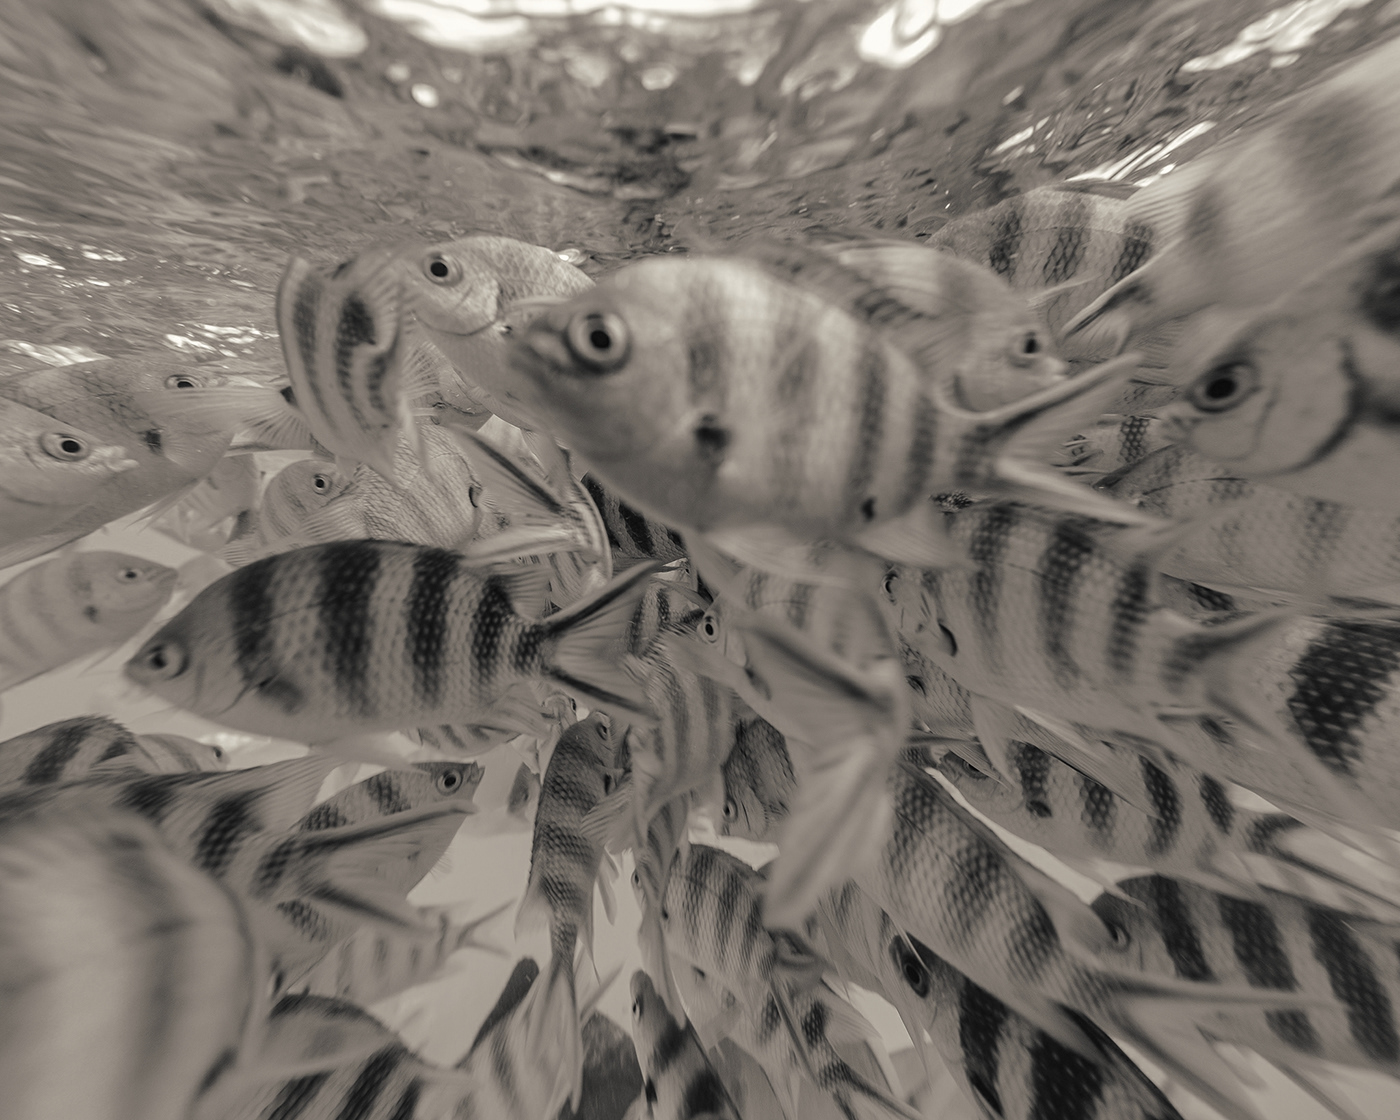 blackandwhite bw fish marine sepia Seychelles split underwater